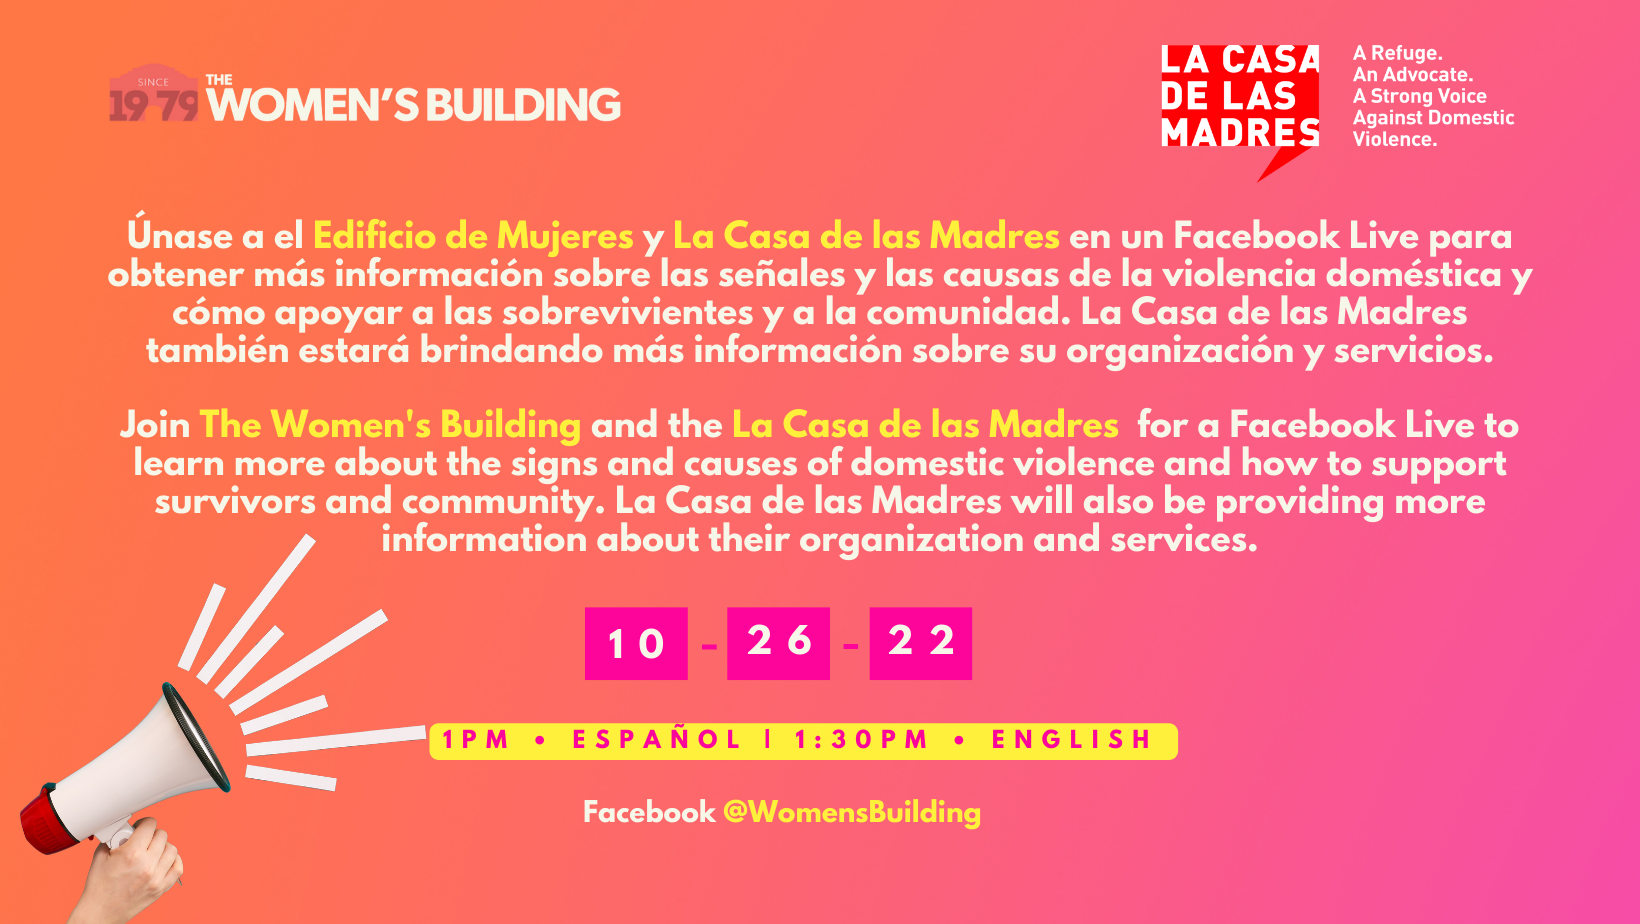 FB Live con La Casa de las Madres - The Women's Building